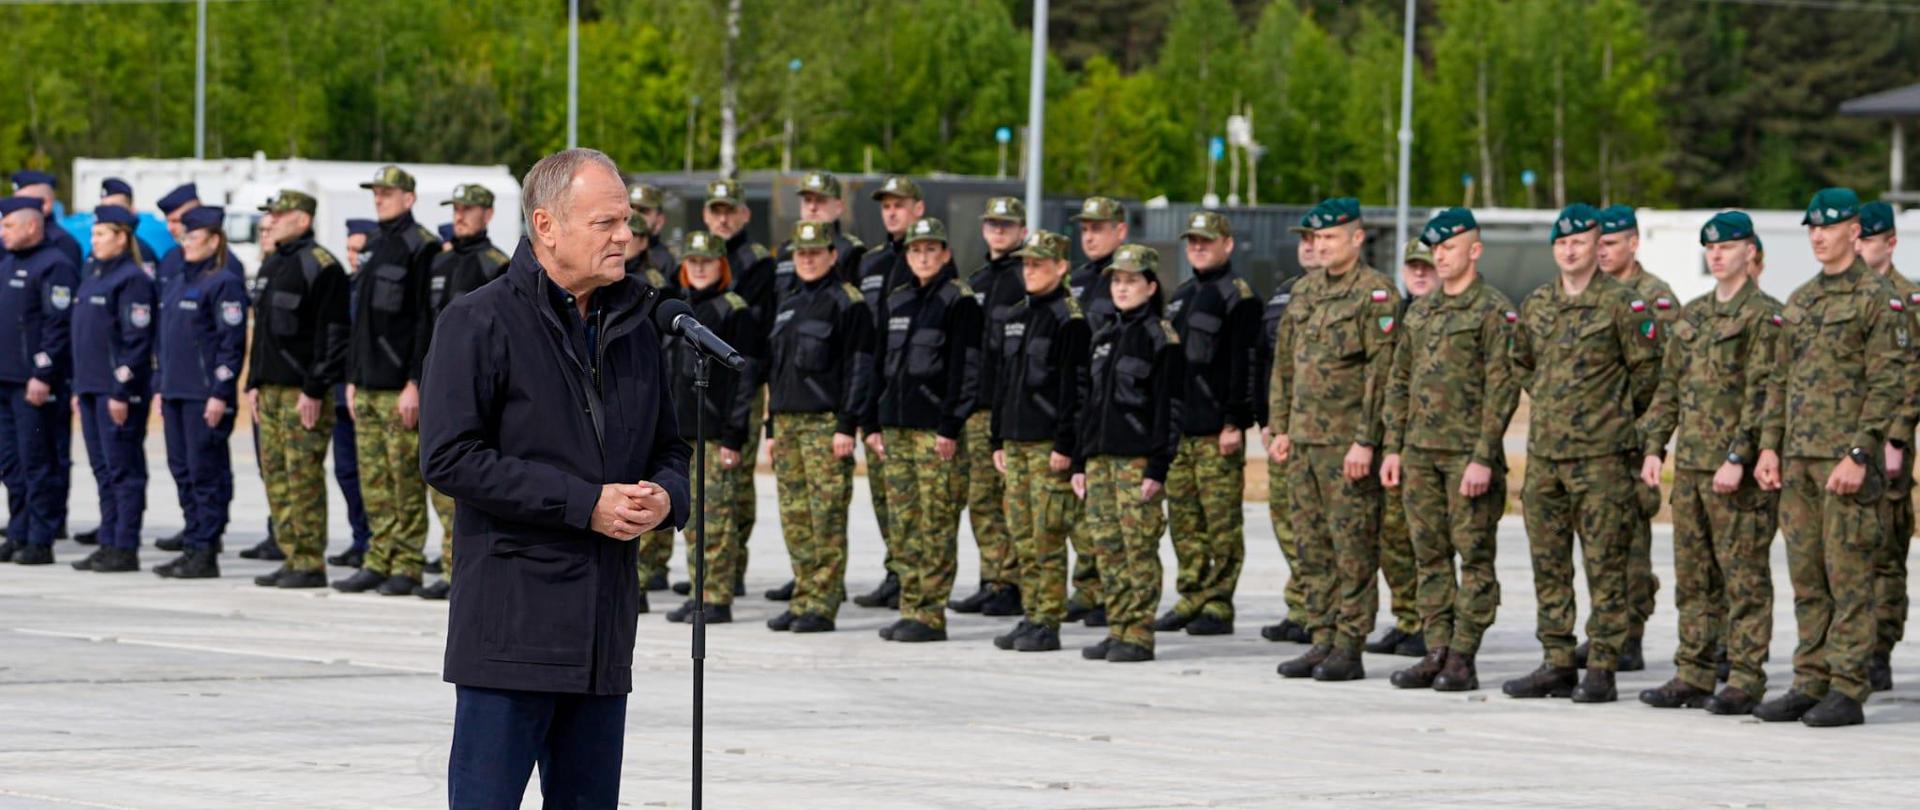 Wizyta premiera Tuska w Wojskowym Zgrupowaniu Zadaniowym Podlasie